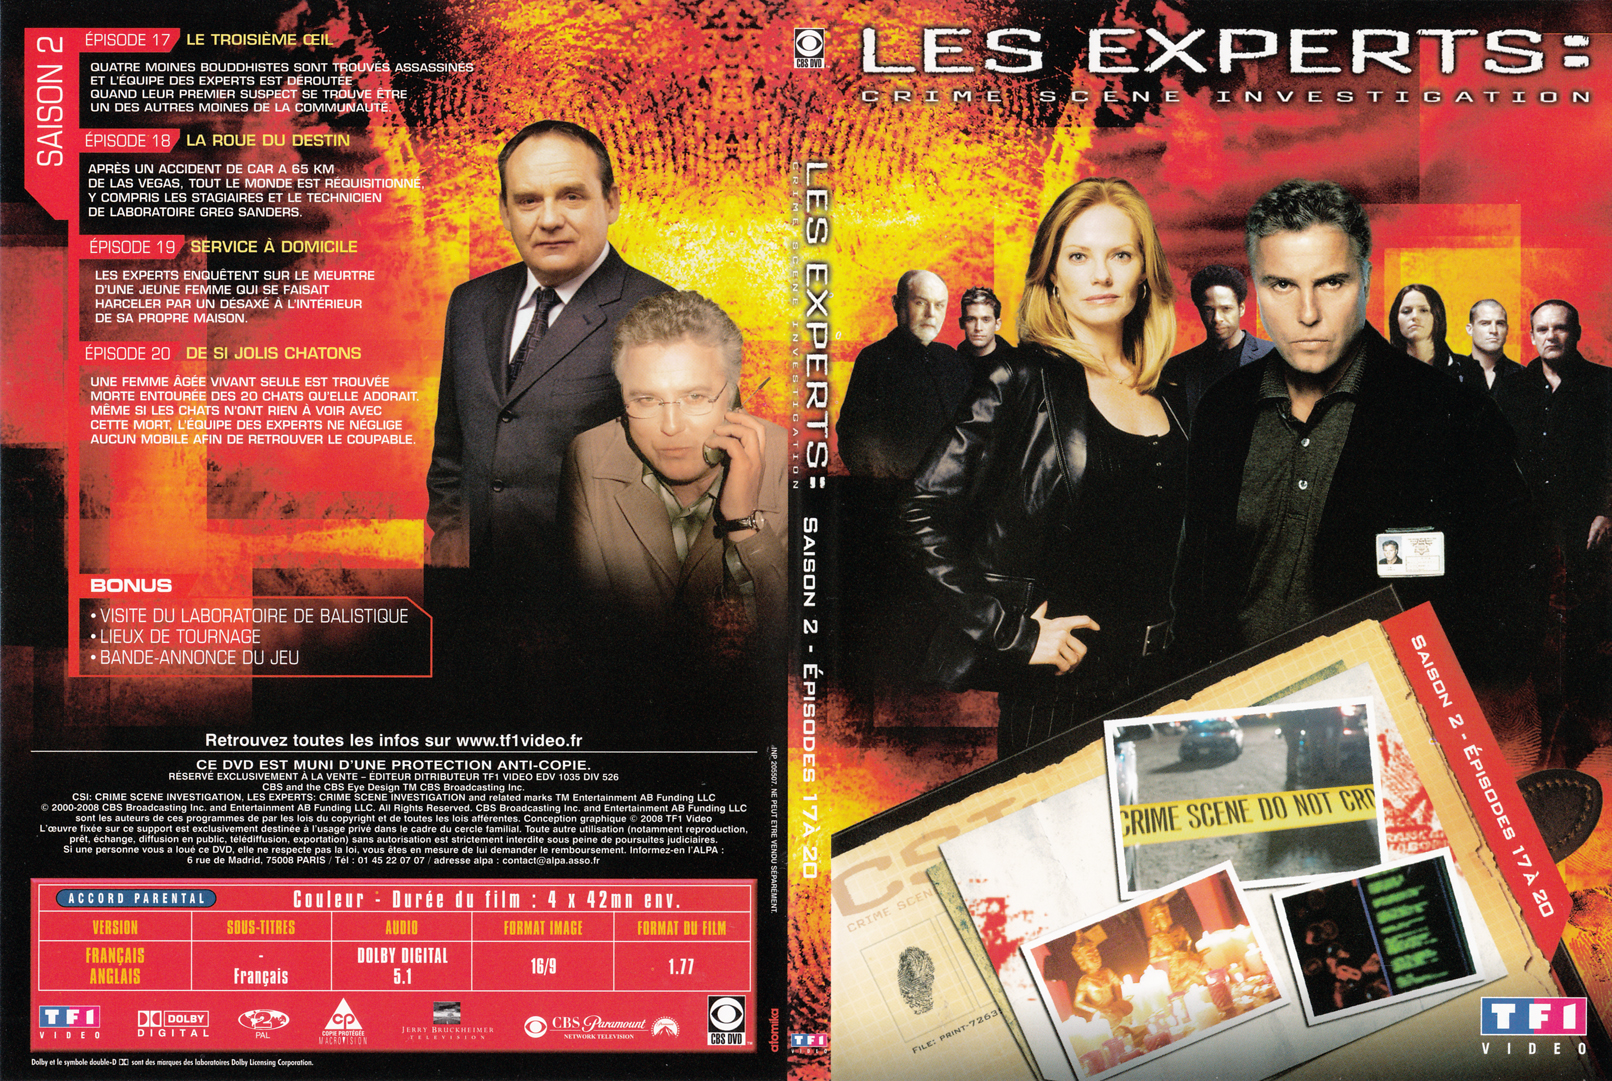 Jaquette DVD Les experts las vegas Saison 02 DVD 05 - SLIM